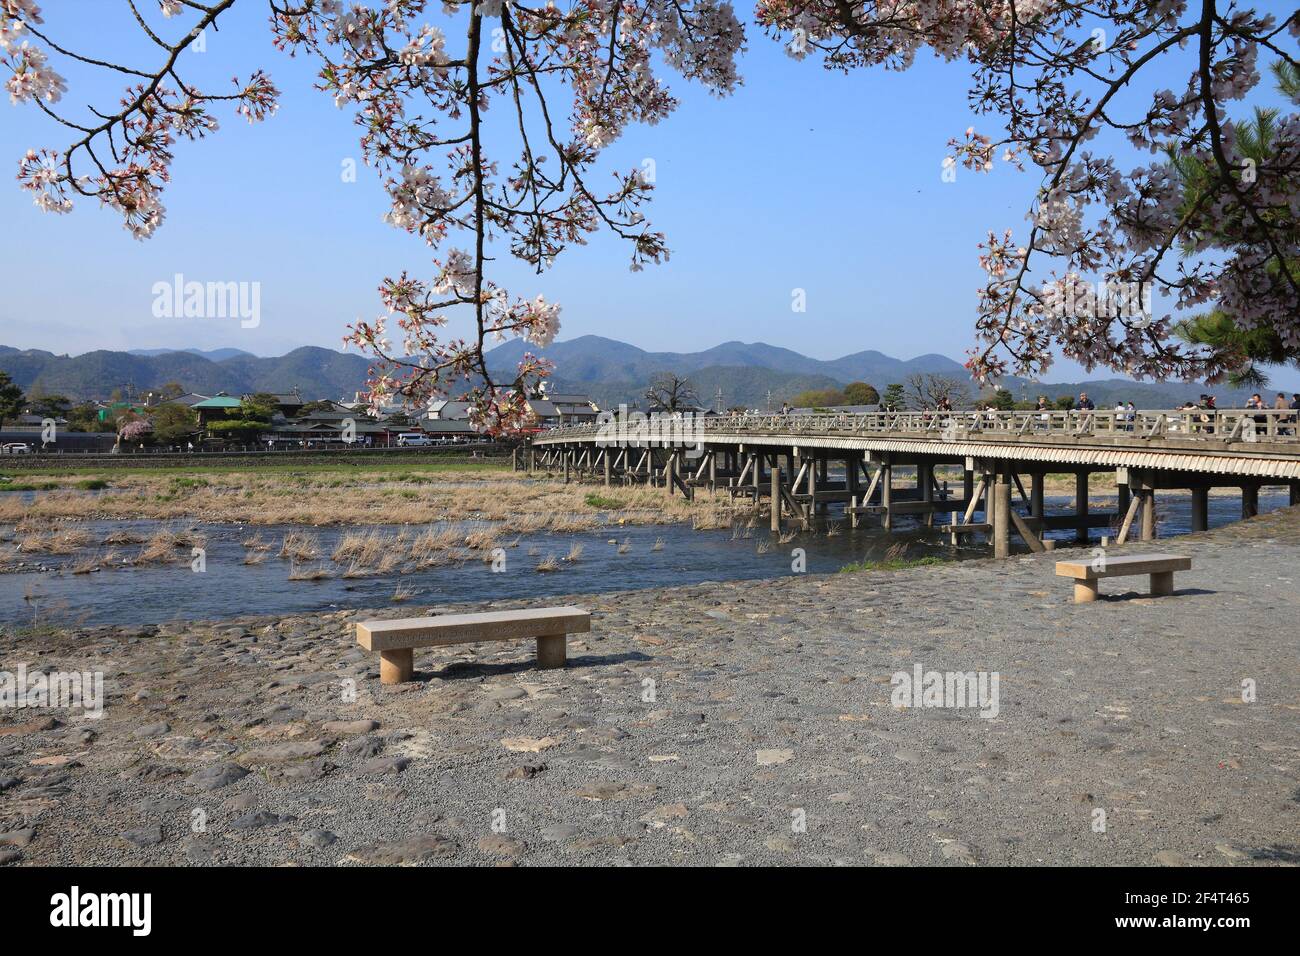 KYOTO, JAPON - 17 AVRIL 2012 : les gens visitent Arashiyama à Kyoto, Japon. Arashiyama est un lieu national désigné de beauté panoramique et site historique Banque D'Images